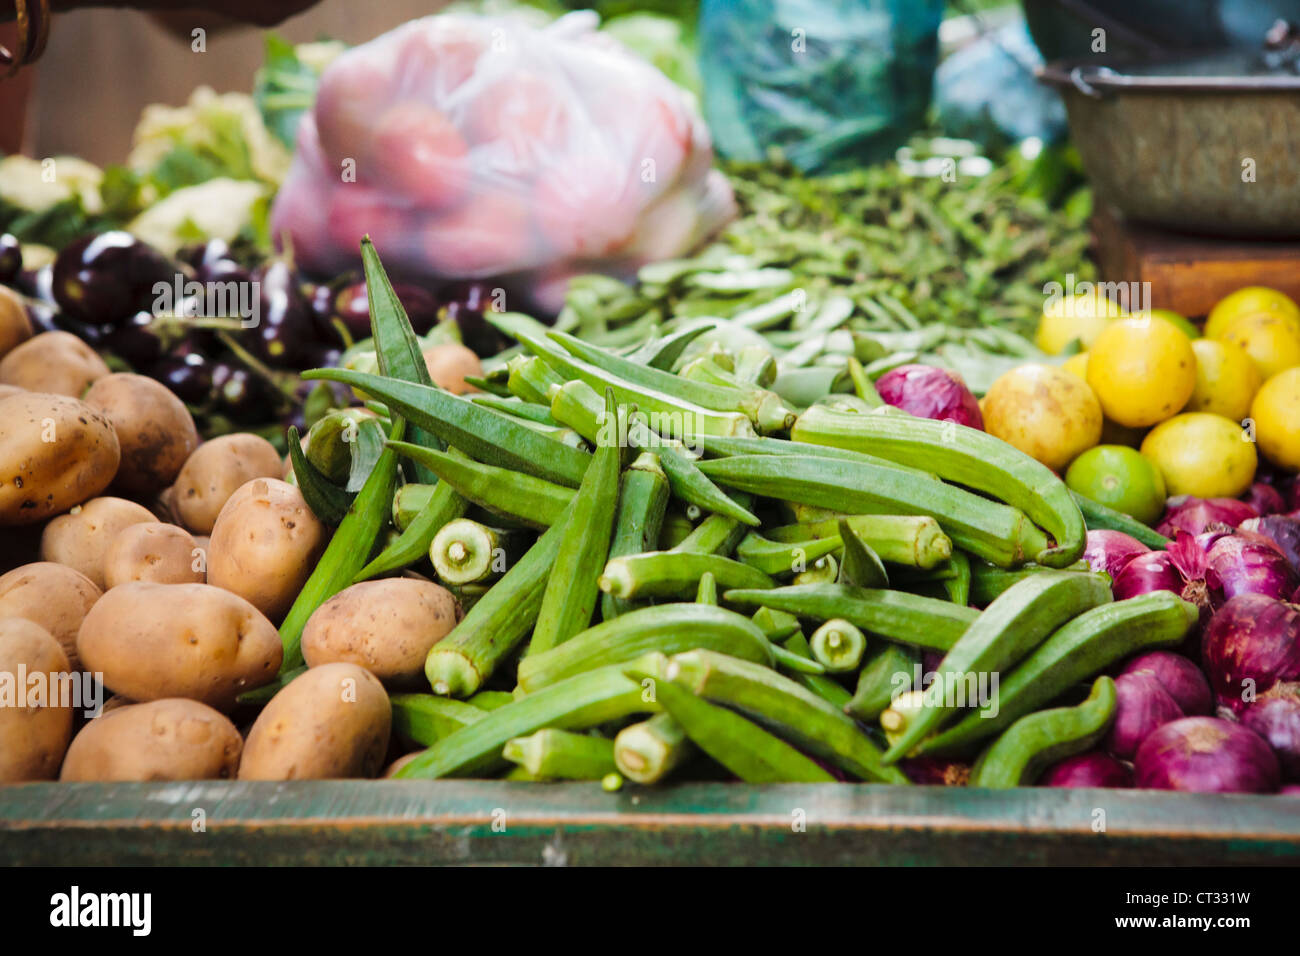 Vendeur de légumes locaux fait du porte à porte pour la vente des produits frais, Gujarat, Inde Banque D'Images